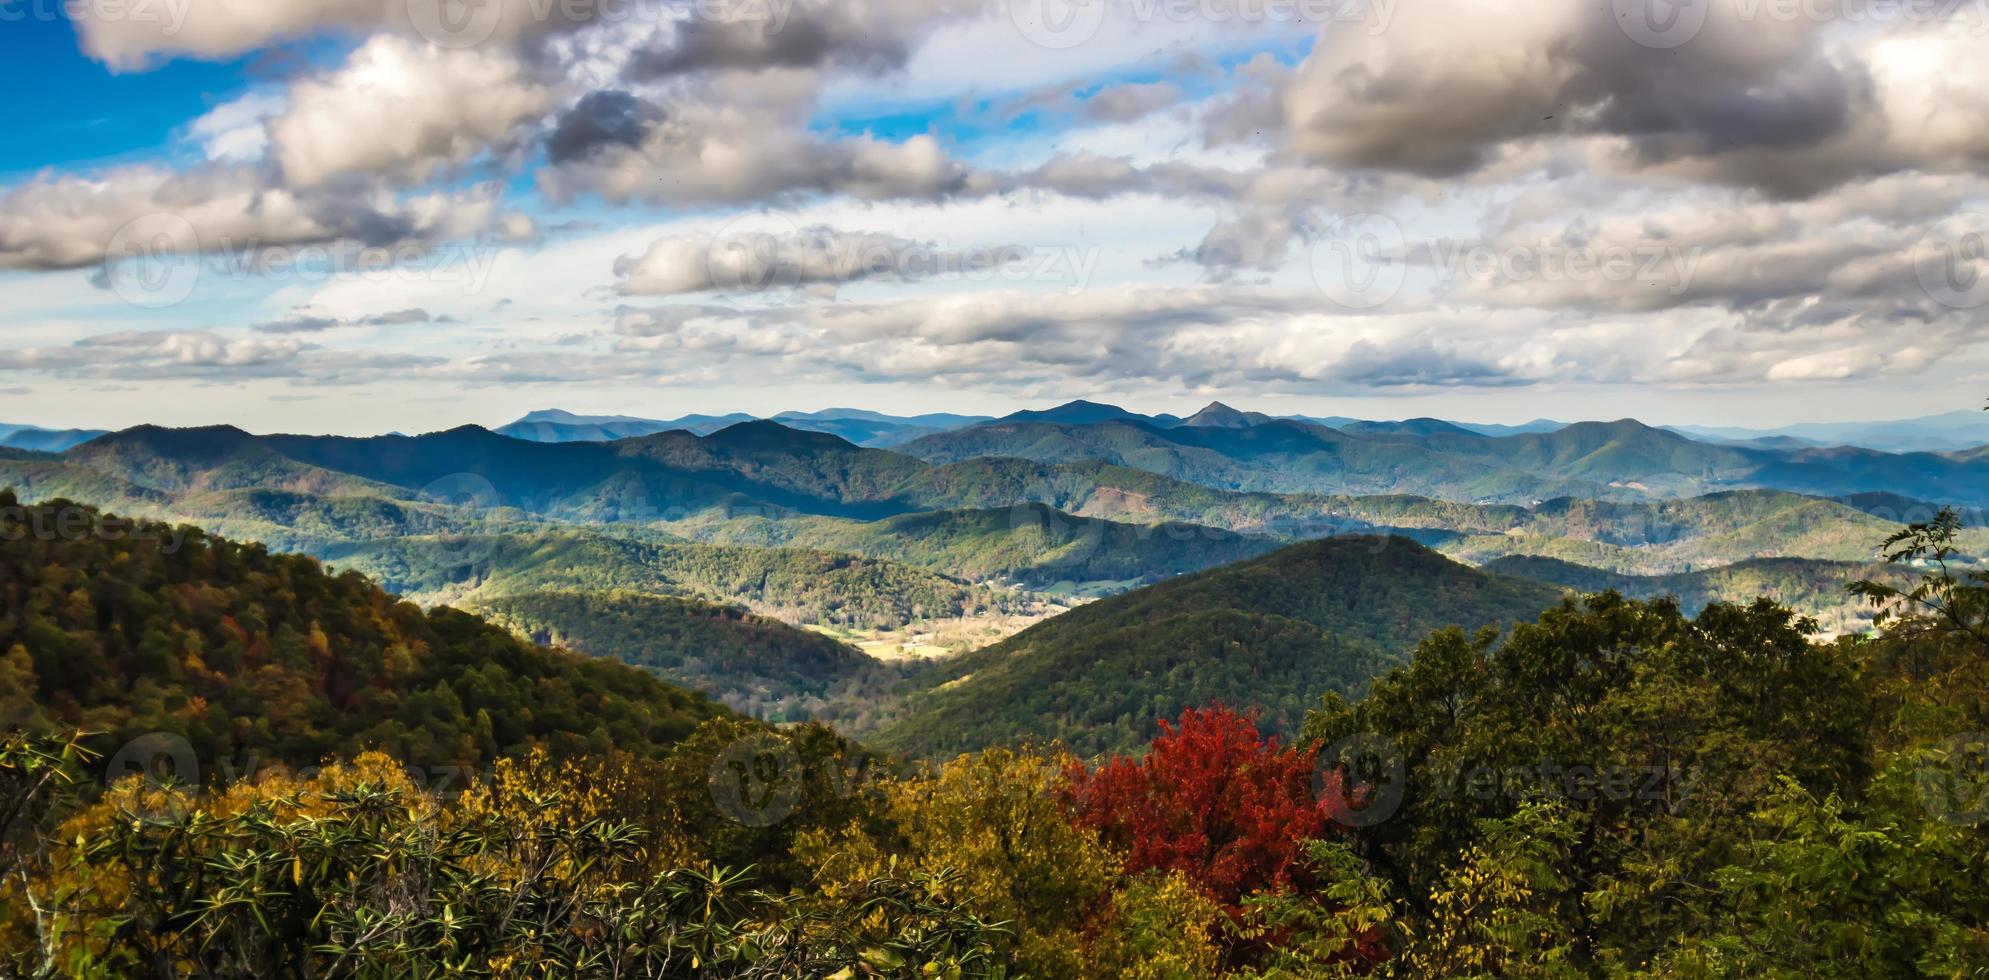 crête bleue et montagnes enfumées changeant de couleur à l'automne photo